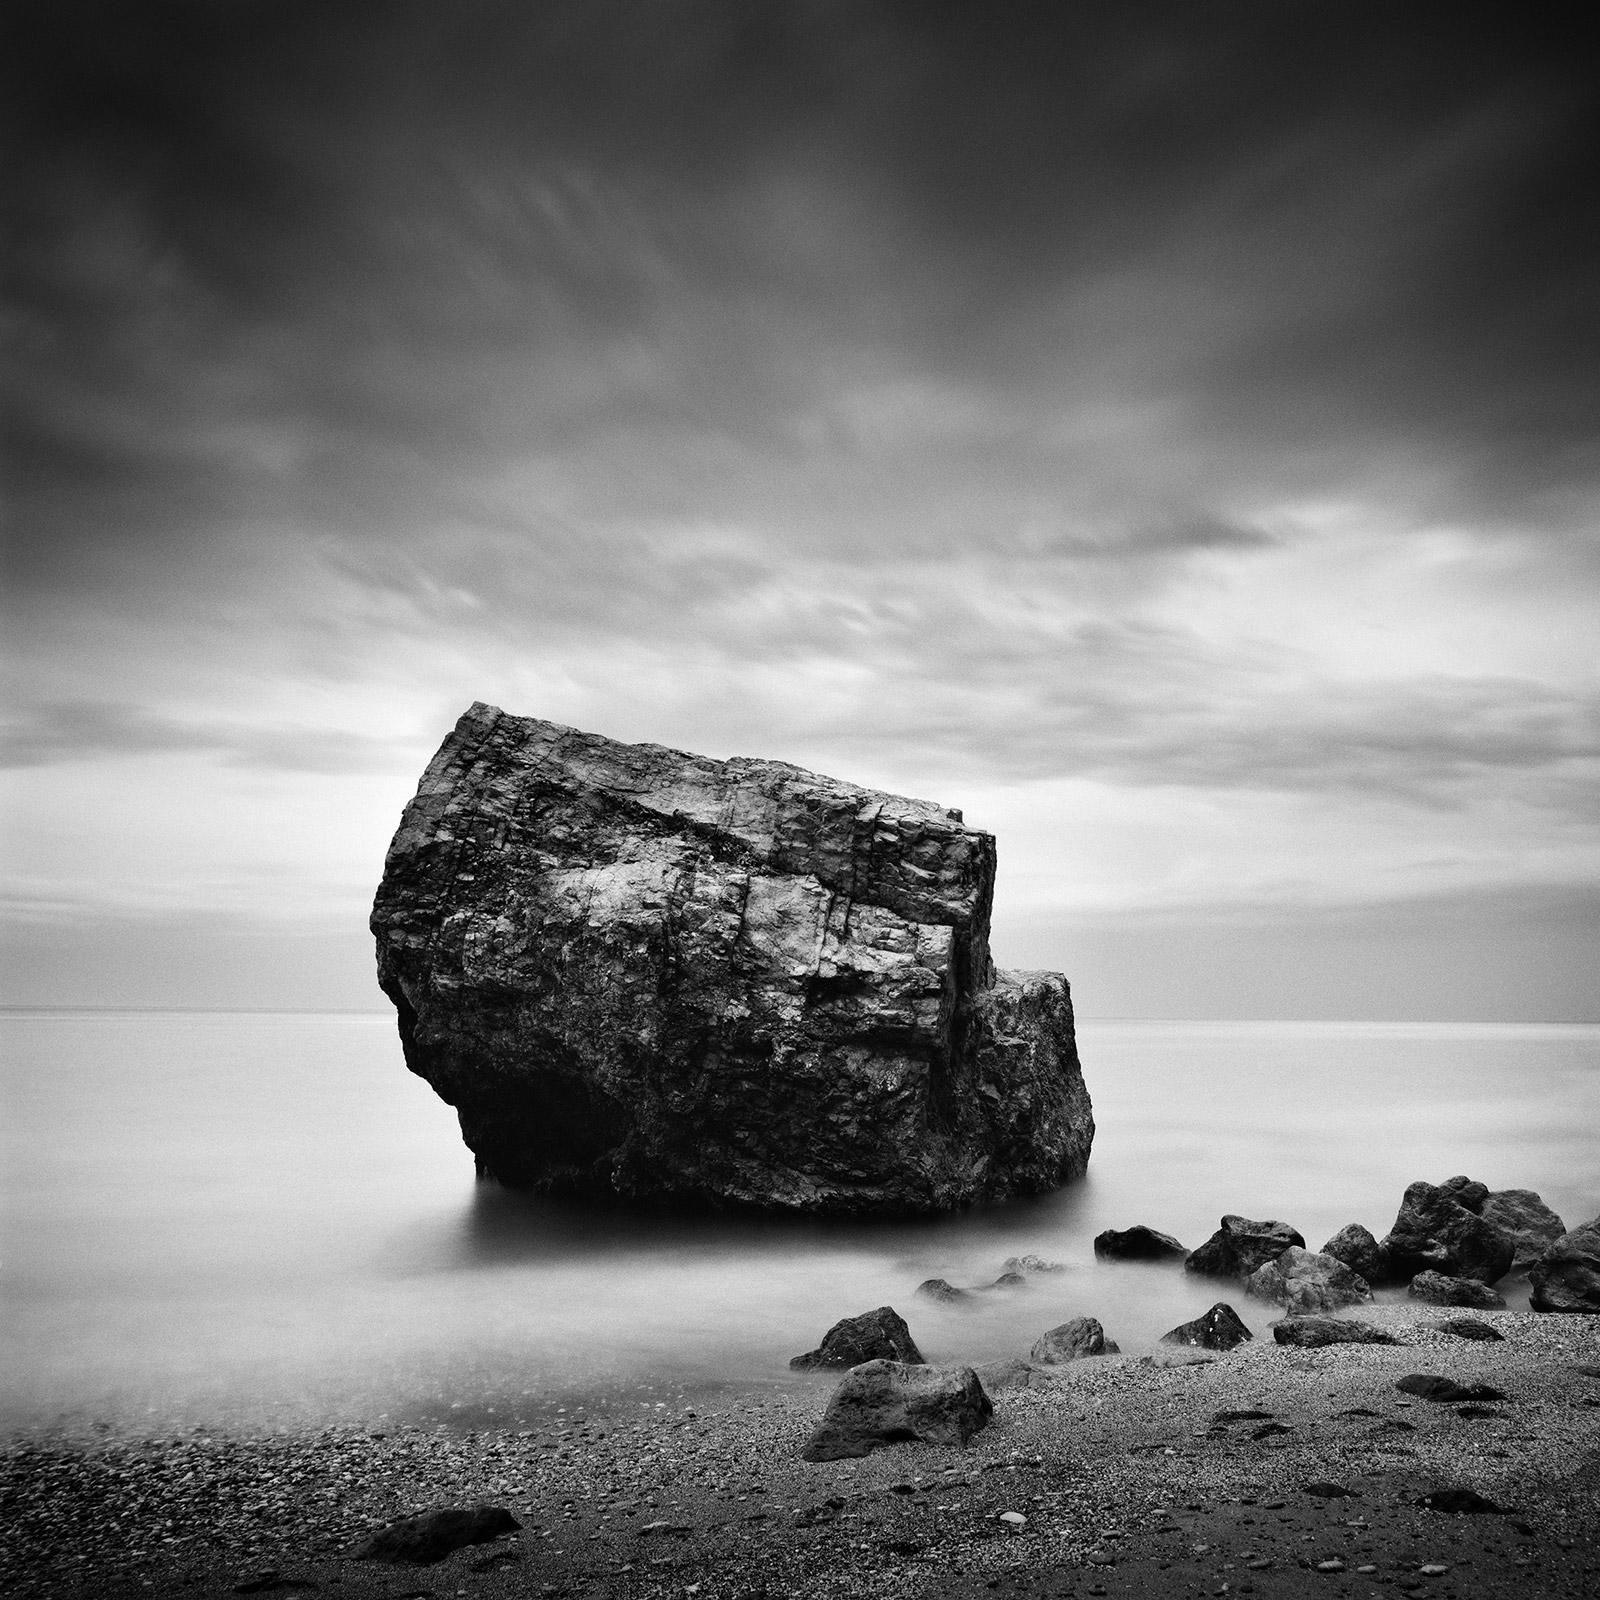 Landscape Photograph Gerald Berghammer - Great Rock, Beach, Espagne, photographie d'art en noir et blanc, paysage